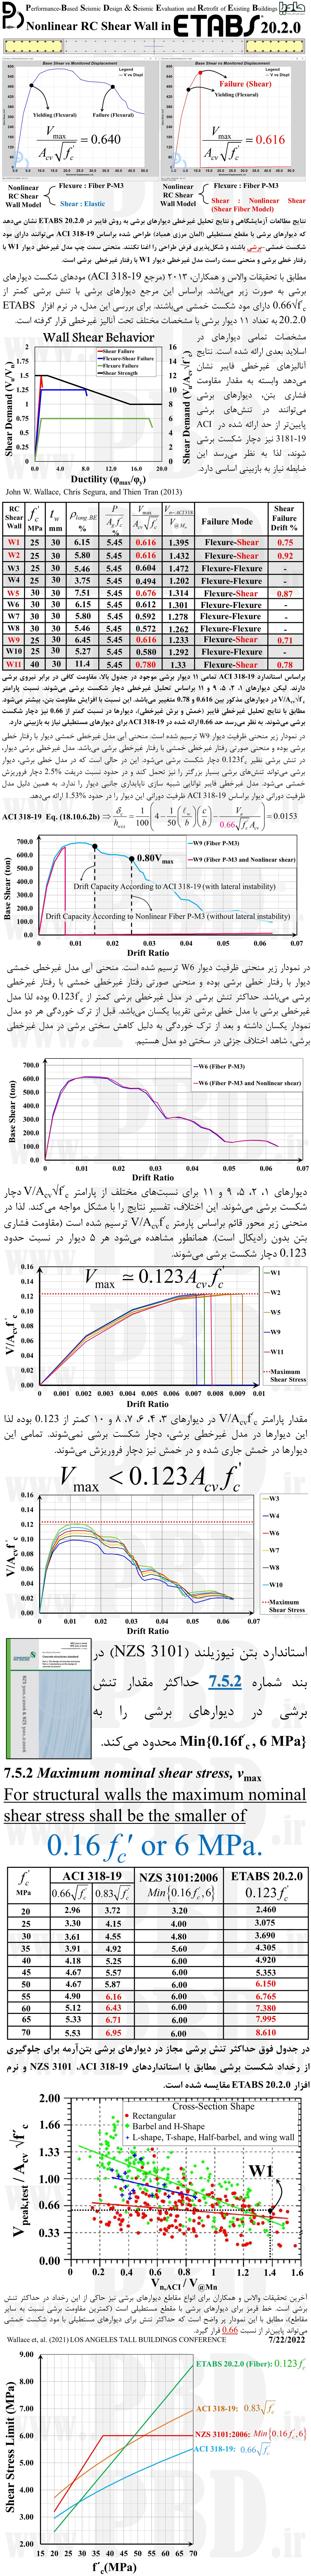 Maximum Shear Strength of RC Shear Wall in ETABS Nonlinear Fiber Model 